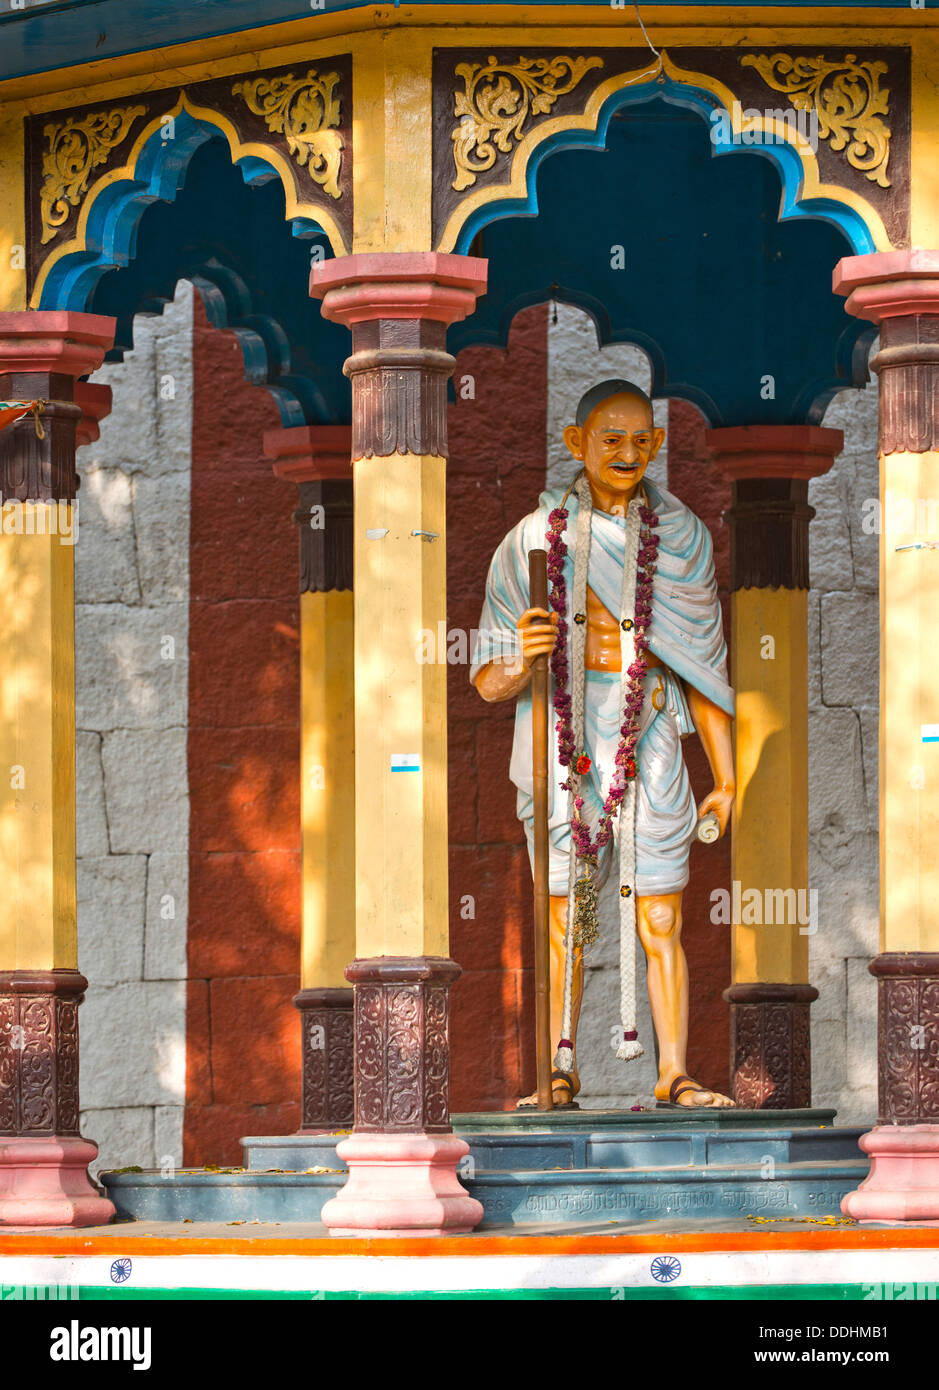 Représentation de Mahatma Gandhi avec bâton de marche dans un petit pavillon sur le mur du temple Meenakshi Amman Temple, ou Sri Banque D'Images